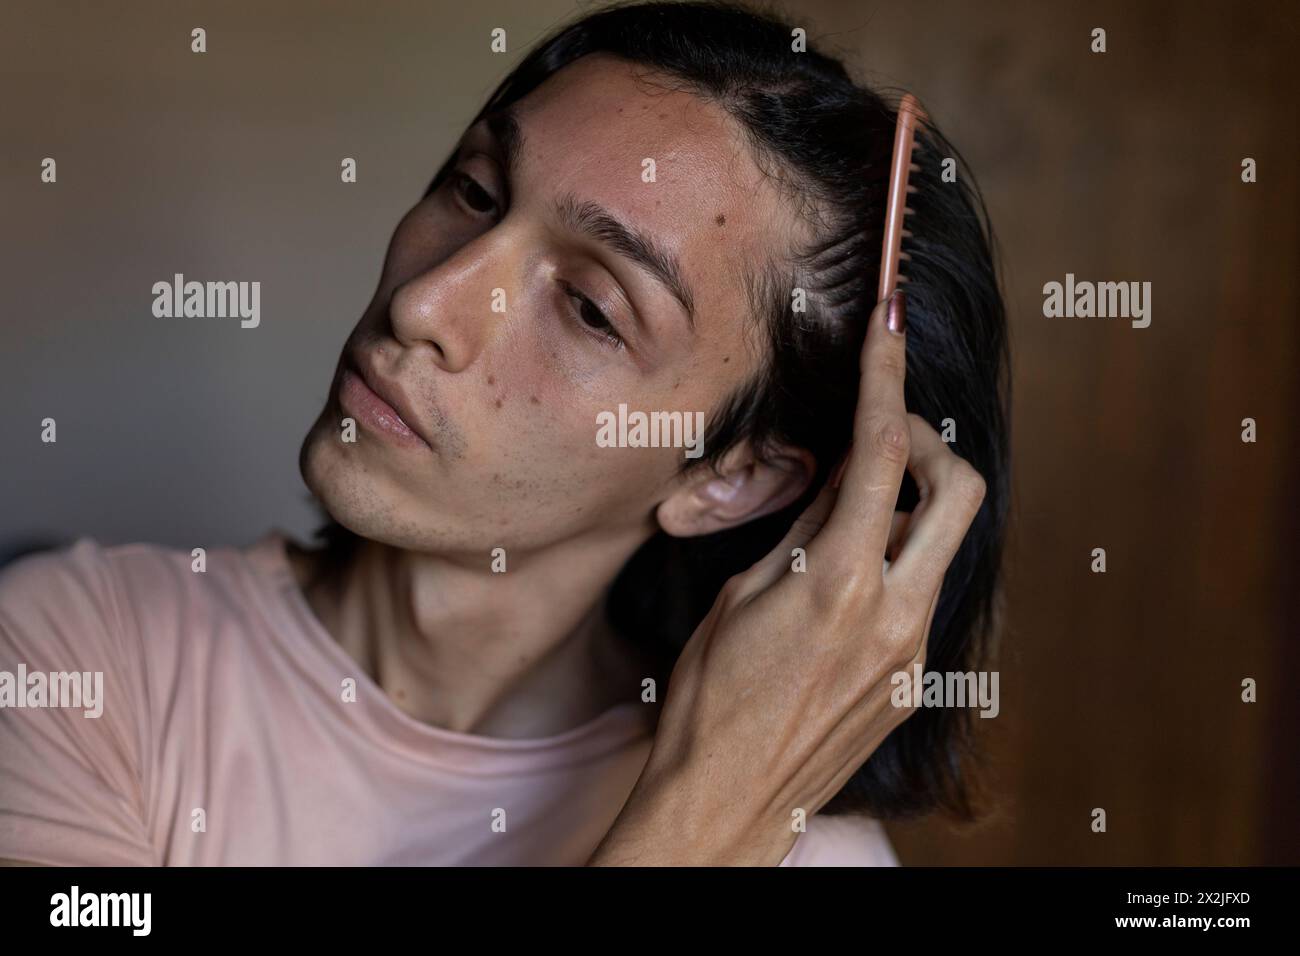 Jeune homme transgenre (22) se peignant les cheveux. Concept transgenre Banque D'Images